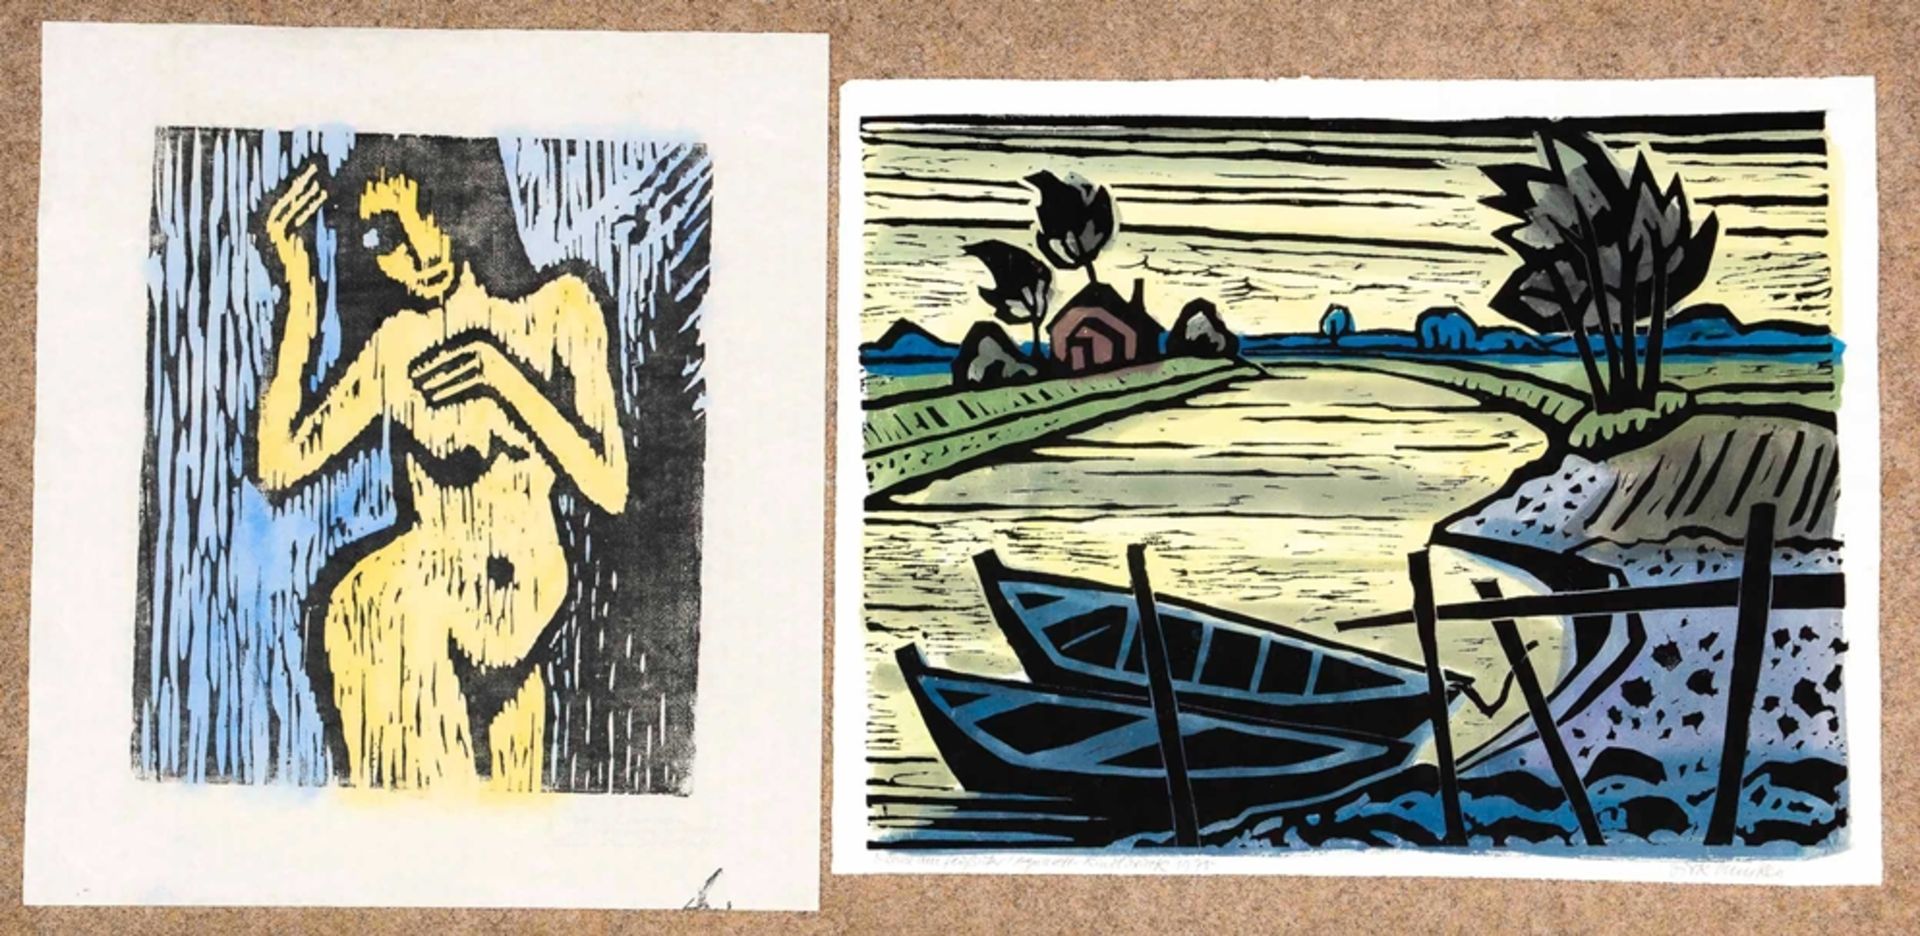 Dirk Huisken, Linolschnitt coloriert mit Beigabe "Akt", Buch beigegeben. "Kähne am Flussufer" von 1